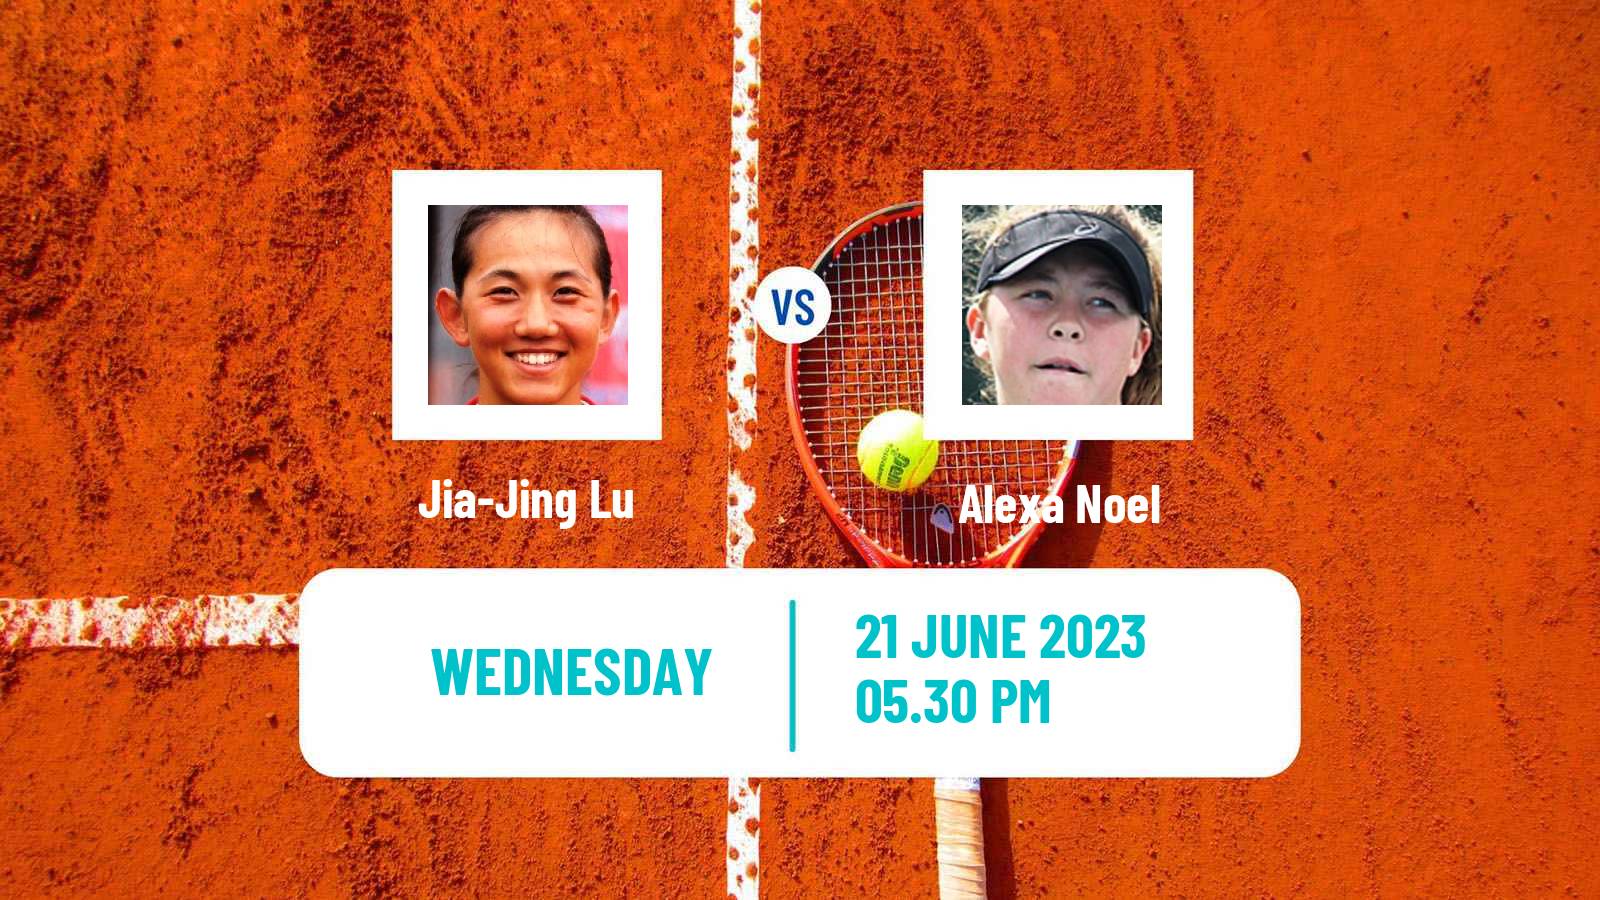 Tennis ITF W25 Wichita 2 Women Jia-Jing Lu - Alexa Noel